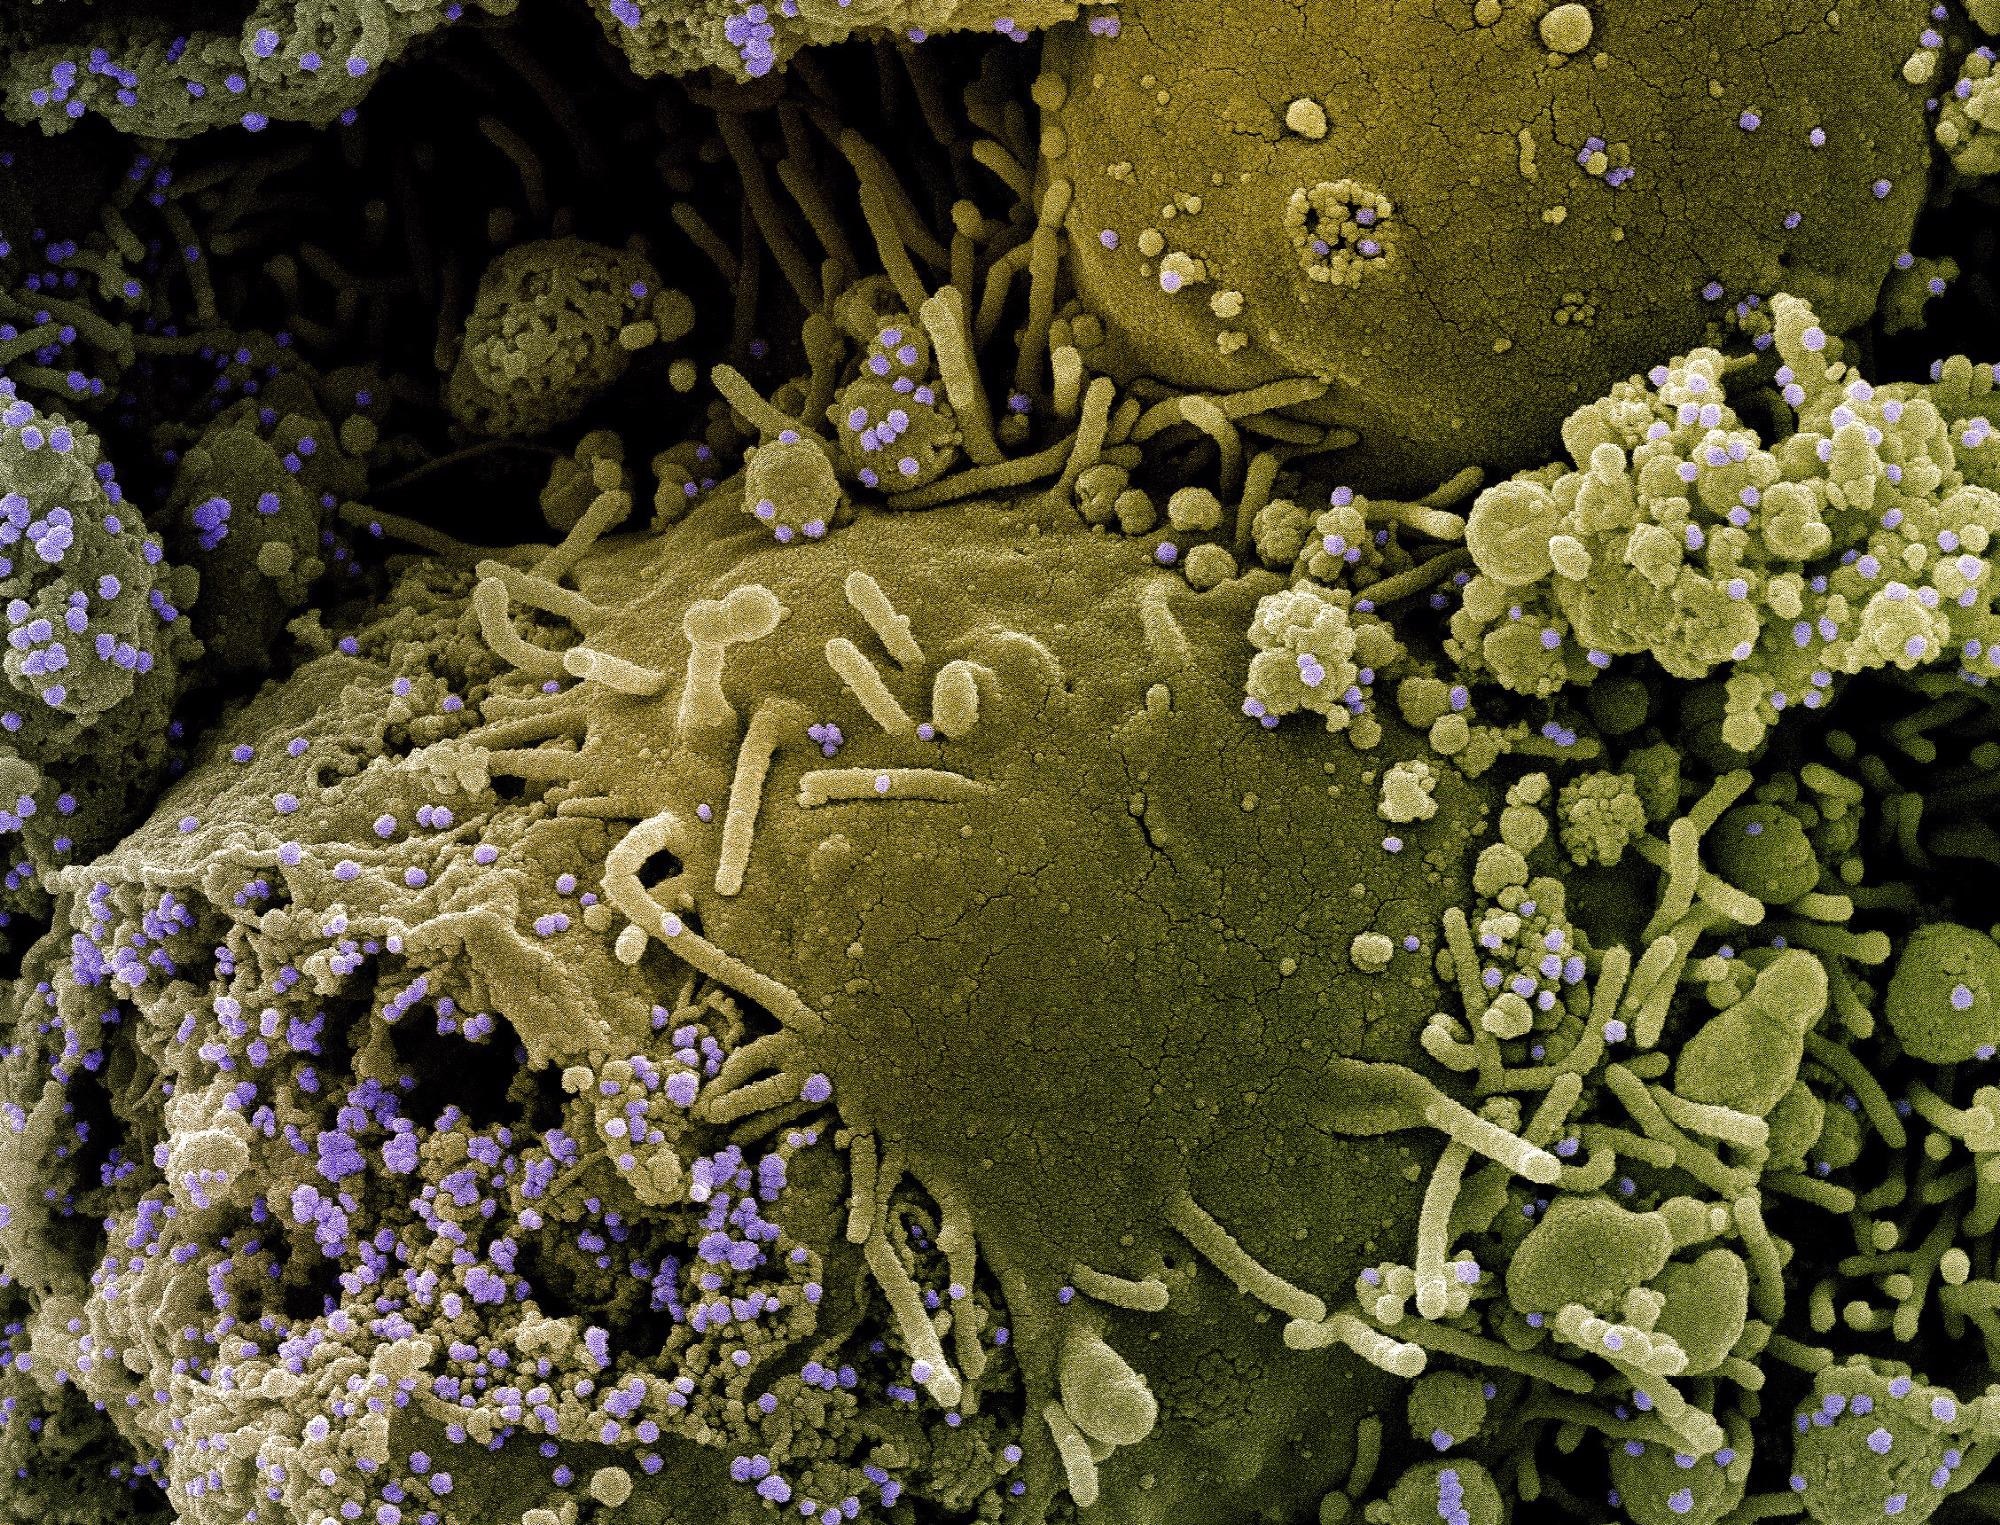 रोगी के नमूने से अलग किए गए SARS-CoV-2 वायरस कणों (बैंगनी) के एक प्रकार के तनाव से संक्रमित कालानुक्रमिक रूप से संक्रमित और आंशिक रूप से लाइस कोशिकाओं (जैतून का हरा) का रंगीन स्कैनिंग इलेक्ट्रॉन माइक्रोग्राफ। छवि क्रेडिट: NIAID